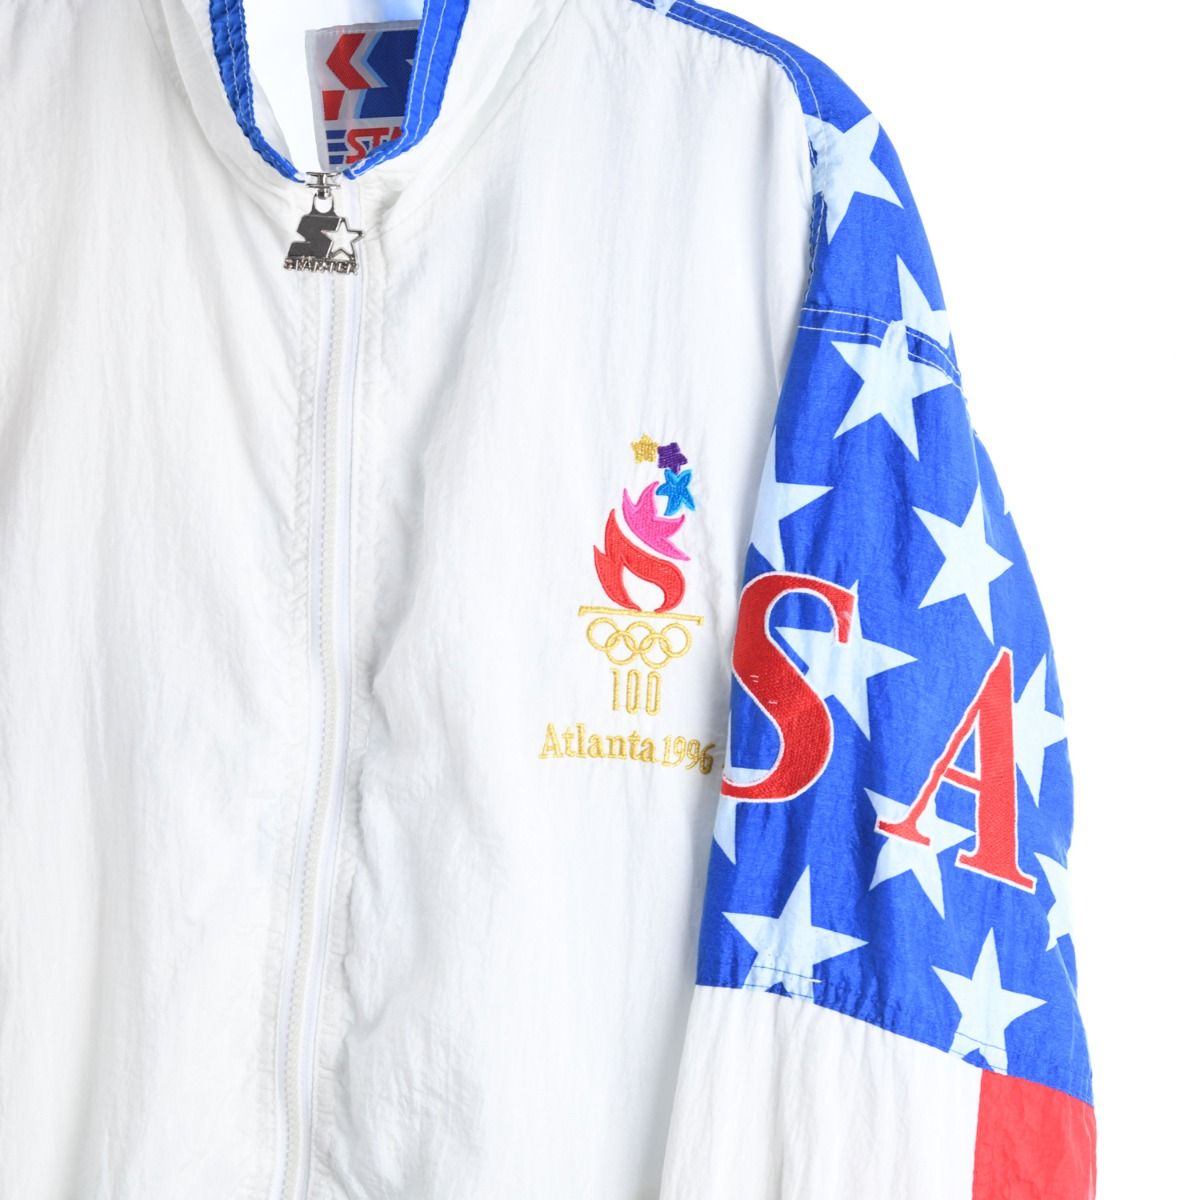 Starter x USA 1996 Atlanta Olympics Jacket